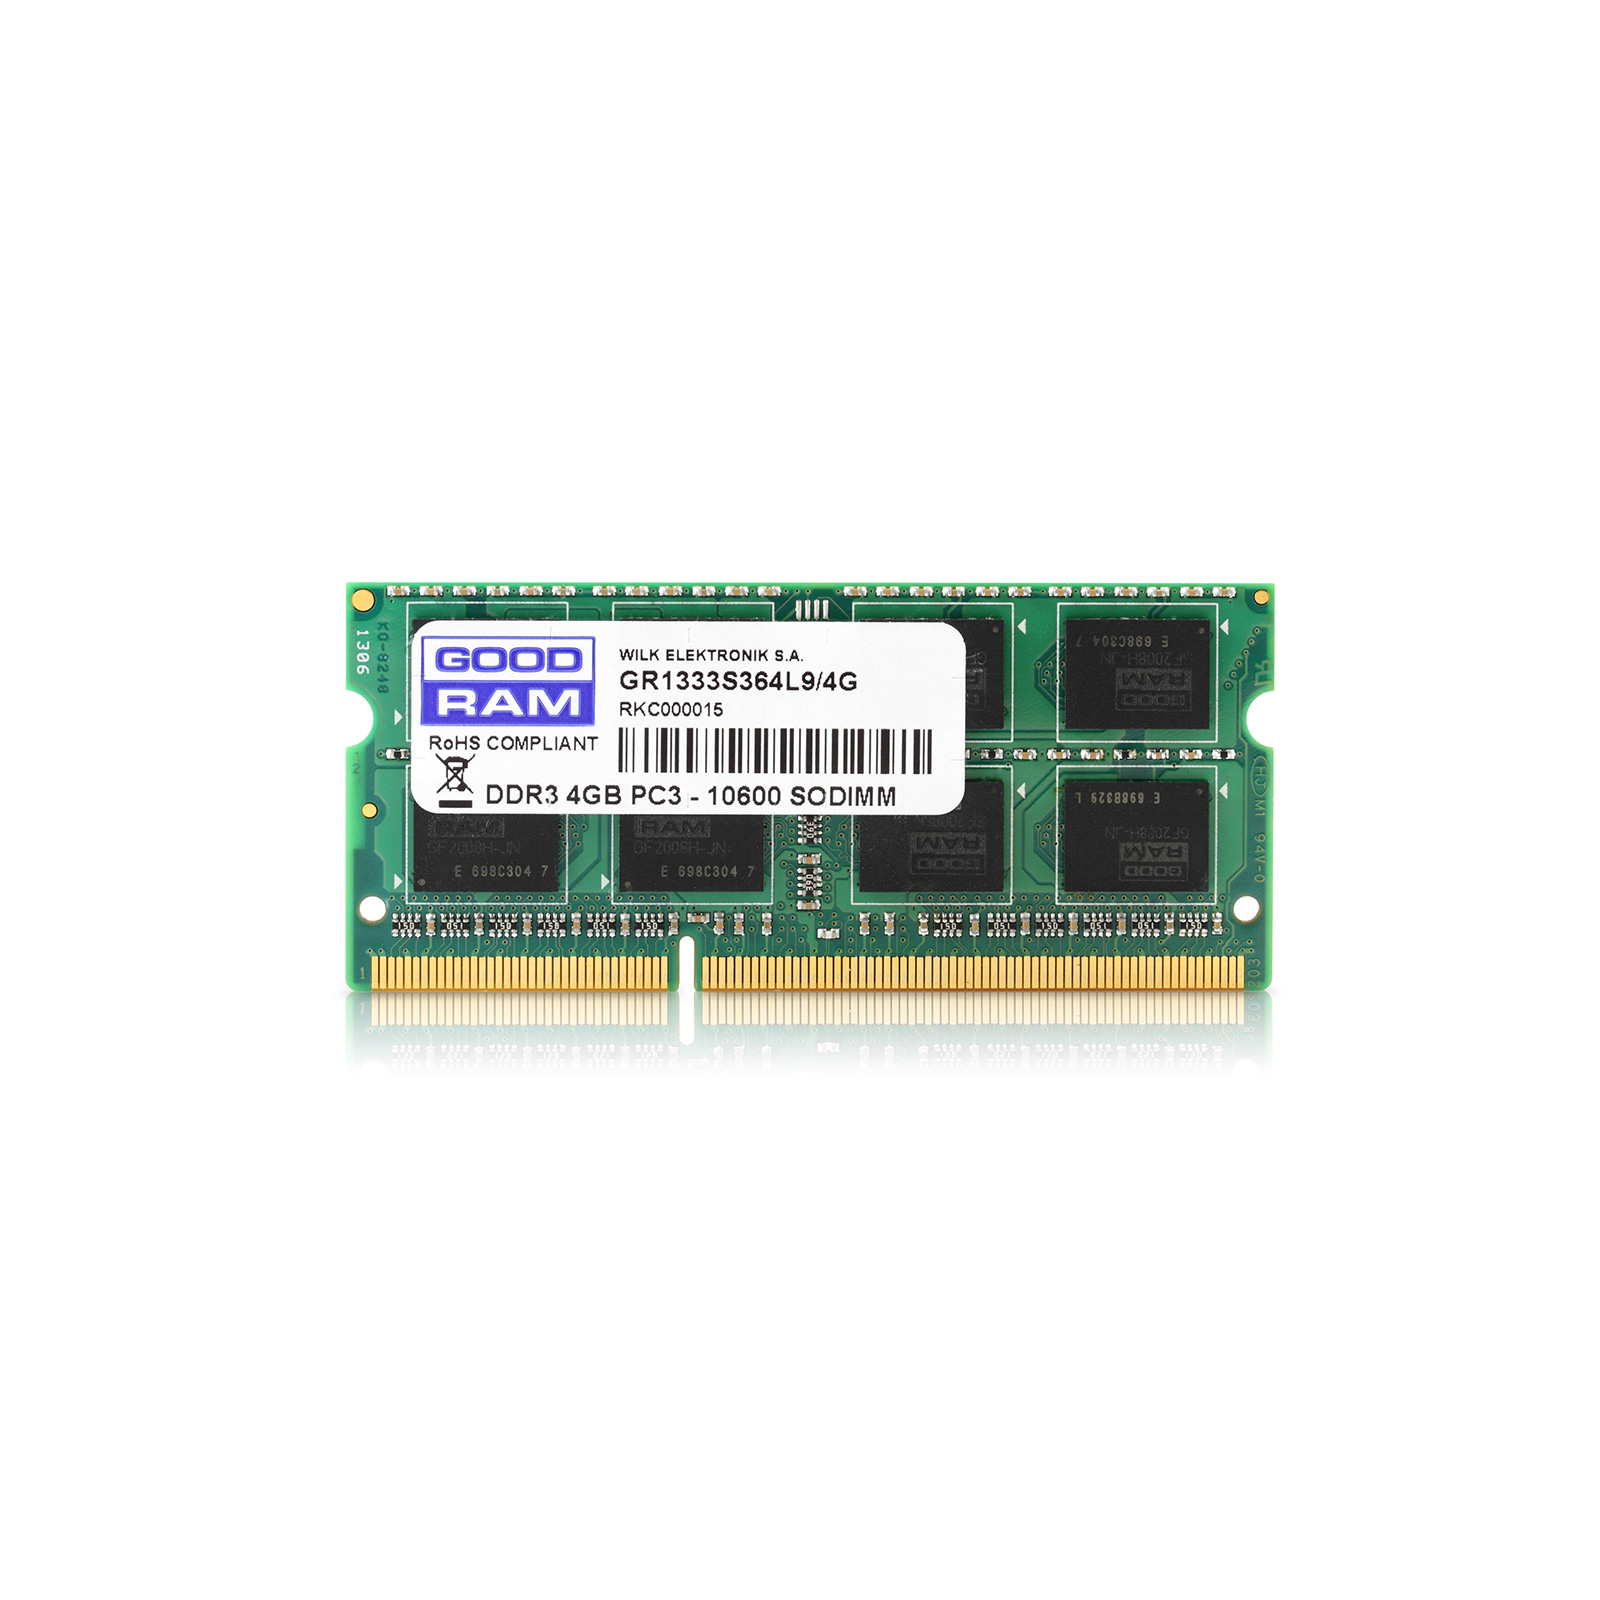 Модуль пам'яті для ноутбука SoDIMM DDR3L 8GB 1600 MHz Goodram (GR1600S3V64L11/8G)